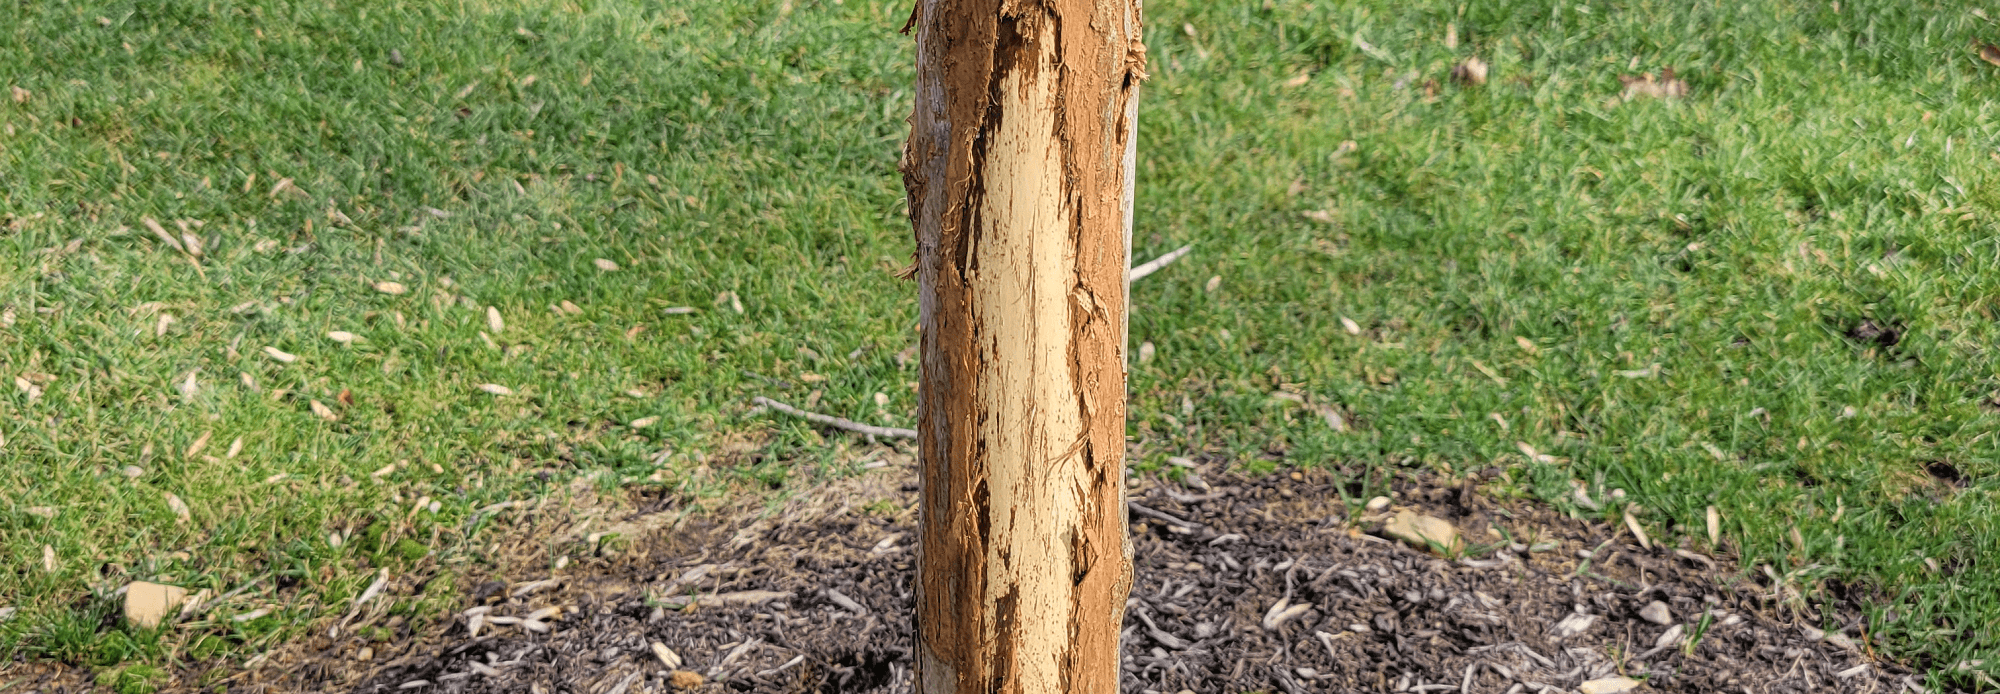 Banner deer damage to trees from antler rub - Burkholder PHC